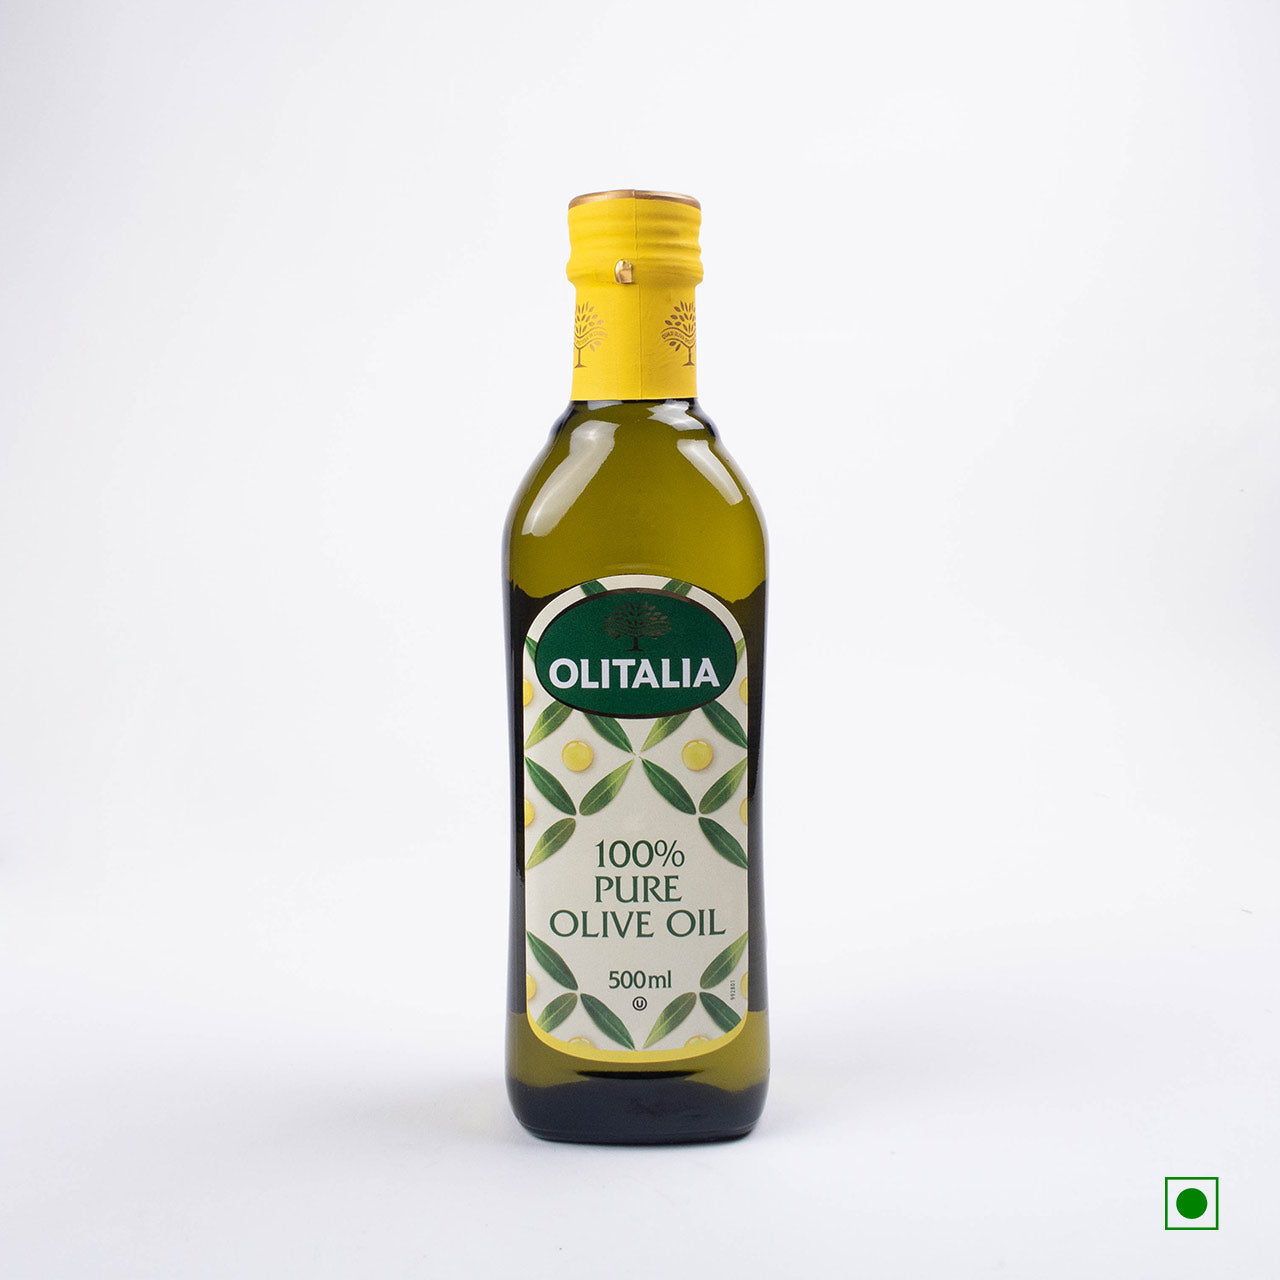 Olitalia Pure Olive Oil - 500ML